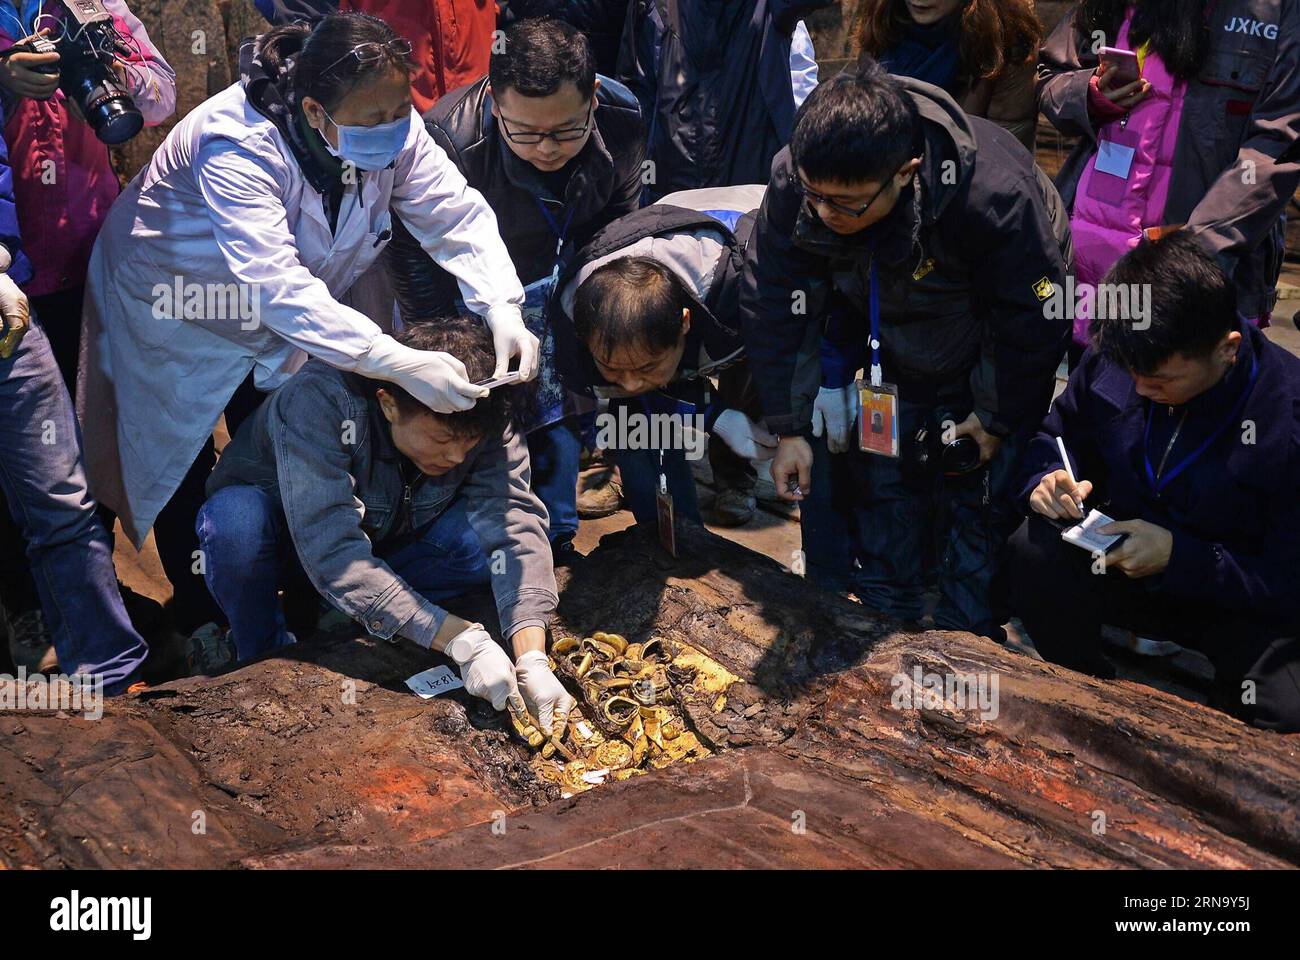 (151225) -- NANCHANG, 25 décembre 2015 -- des archéologues ont découvert des gâteaux d'or clair dans le cercueil principal du cimetière de Haihunhou (marquis de Haihun), province de Jiangxi, dans l'est de la Chine, 24 décembre 2015. Il y avait 96 gâteaux d'or et plusieurs sabots d'or nouvellement découverts entre le cercueil intérieur et extérieur au cimetière Haihunhou le 24 décembre, faisant le nombre de gâteaux d'or découverts ici augmenter à 285, le plus parmi toutes les fouilles archéologiques de la dynastie Han (206 avant J.-C. -220 A.D.) tombes. (LFJ) CHINA-JIANGXI-MARQUIS OF HAIHUN-TOMB-MAIN CERCUEIL-EXCAVATION (CN) WANXXIANG PUBLICATIONXNOTXINXCHN Banque D'Images